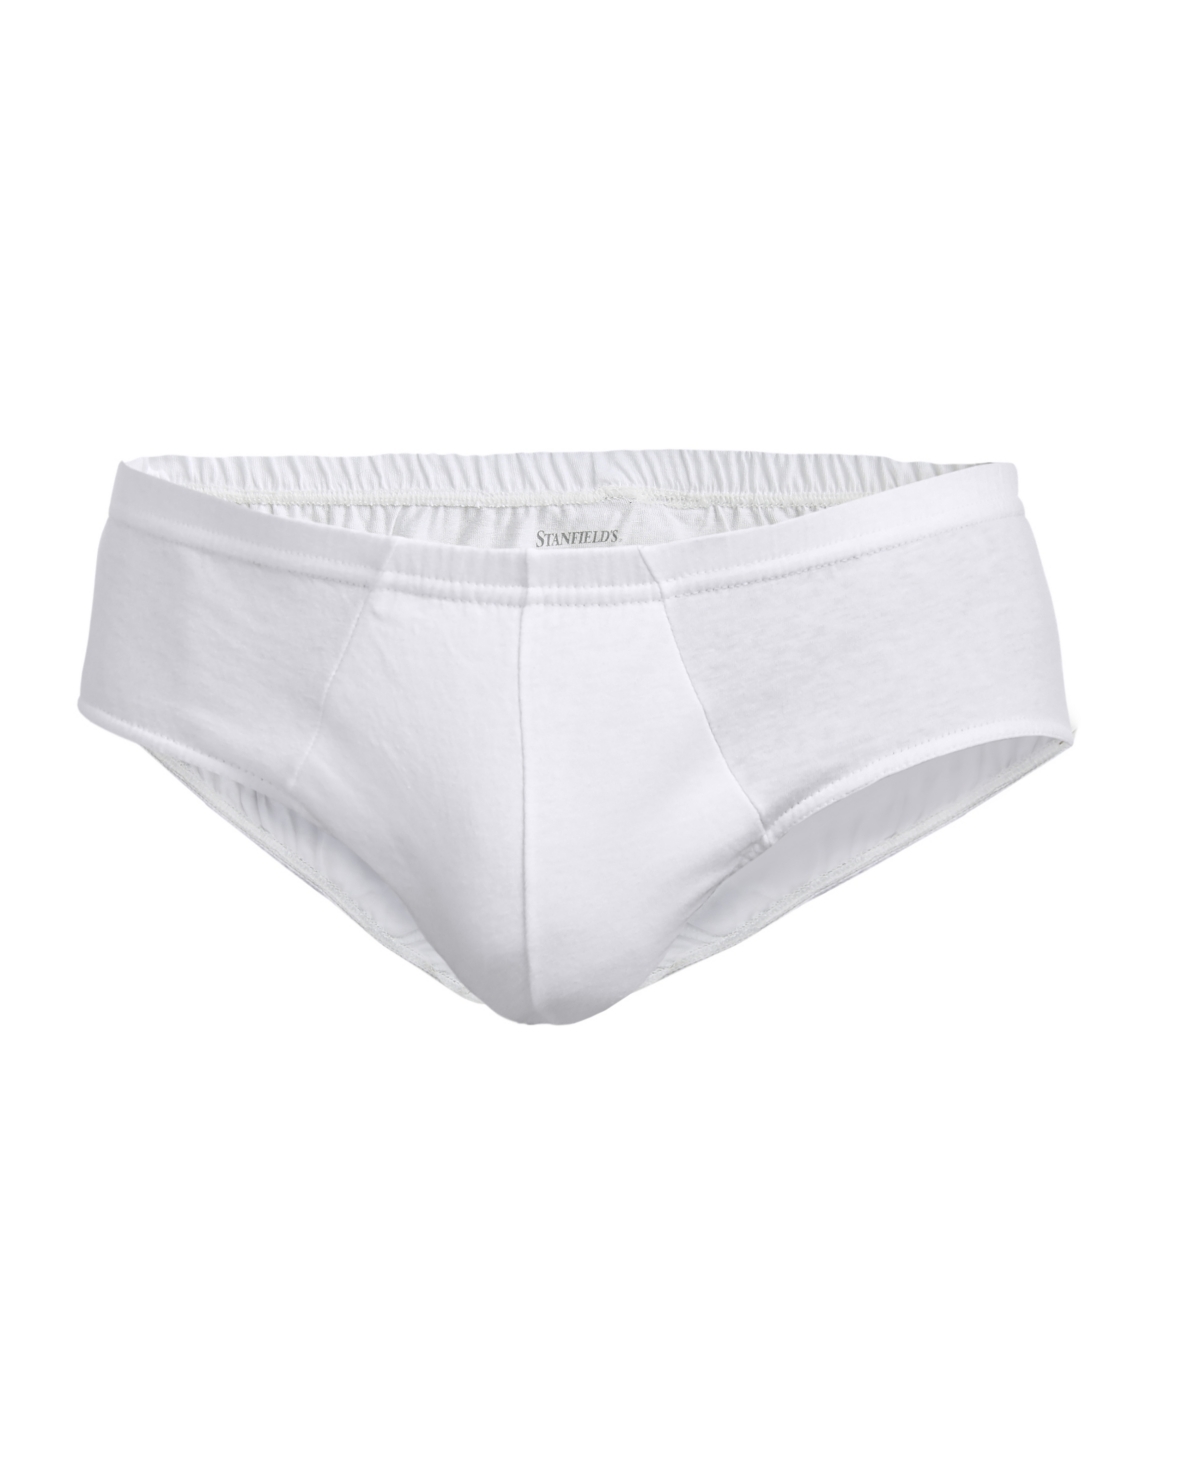 Stanfield's Men's Premium Medi Brief Underwear In White